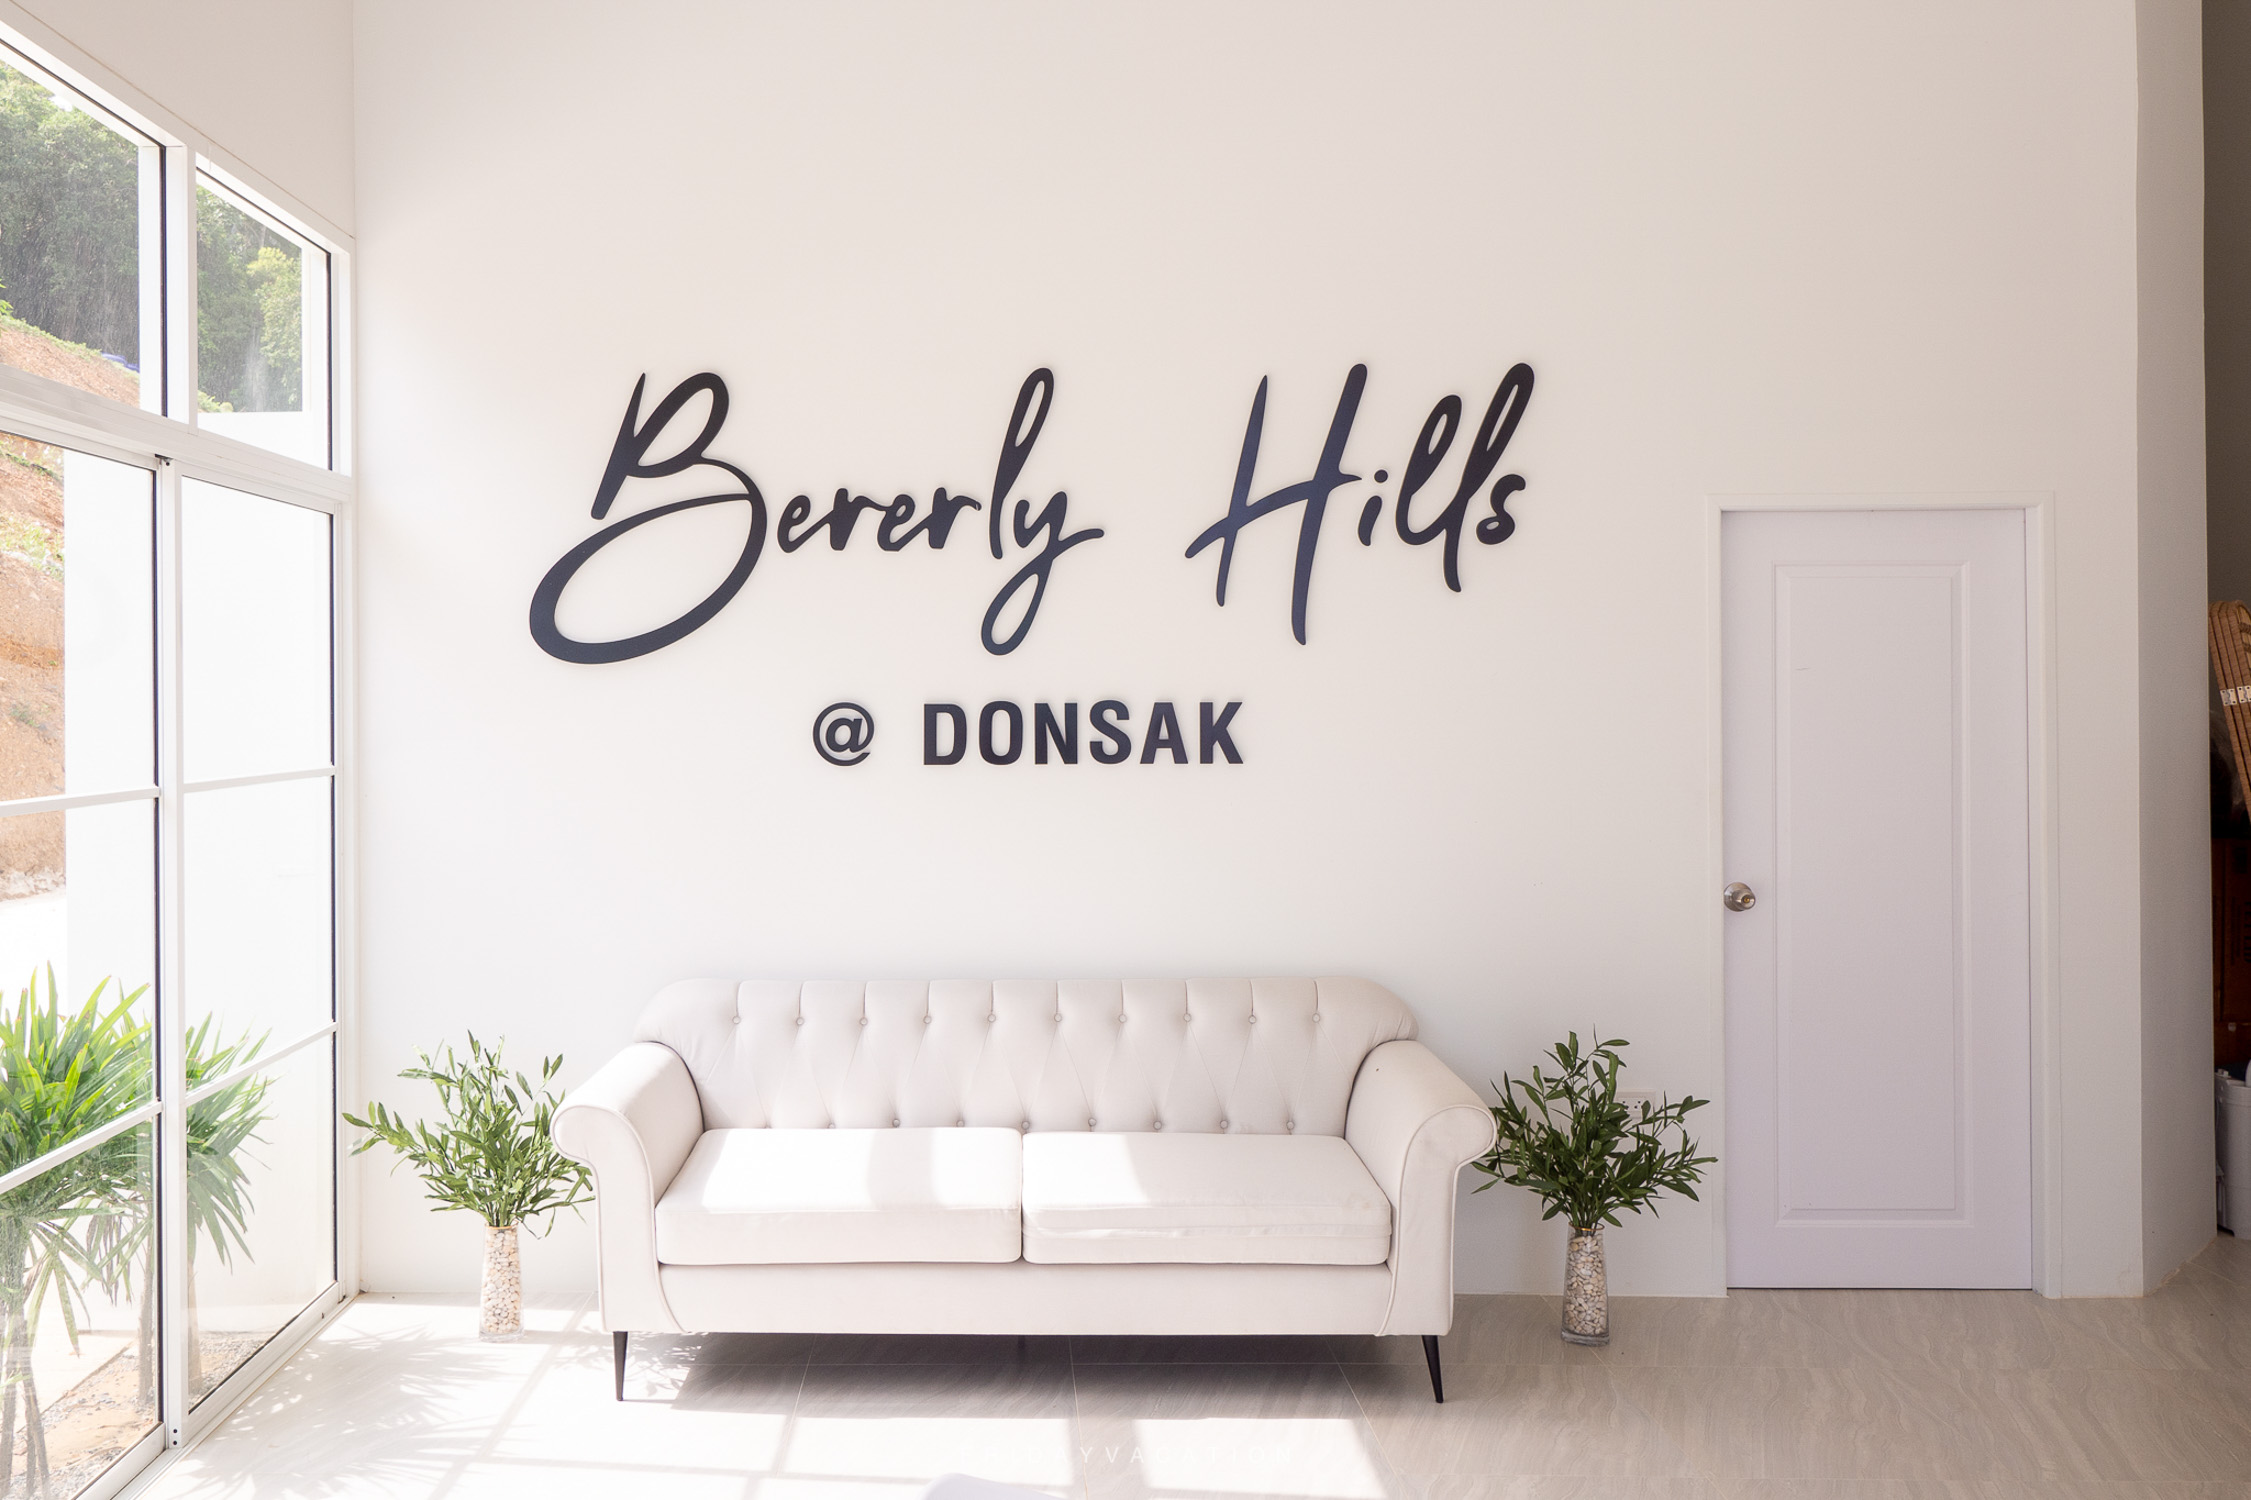 เบเวอร์รี่ ฮิลส์ Beverly Hills At DonSak คาเฟ่วิวทะเลดอนสัก เปิดใหม่ วิวสวย เห็นท่าเรือเฟอร์รี่ สุราษฎร์